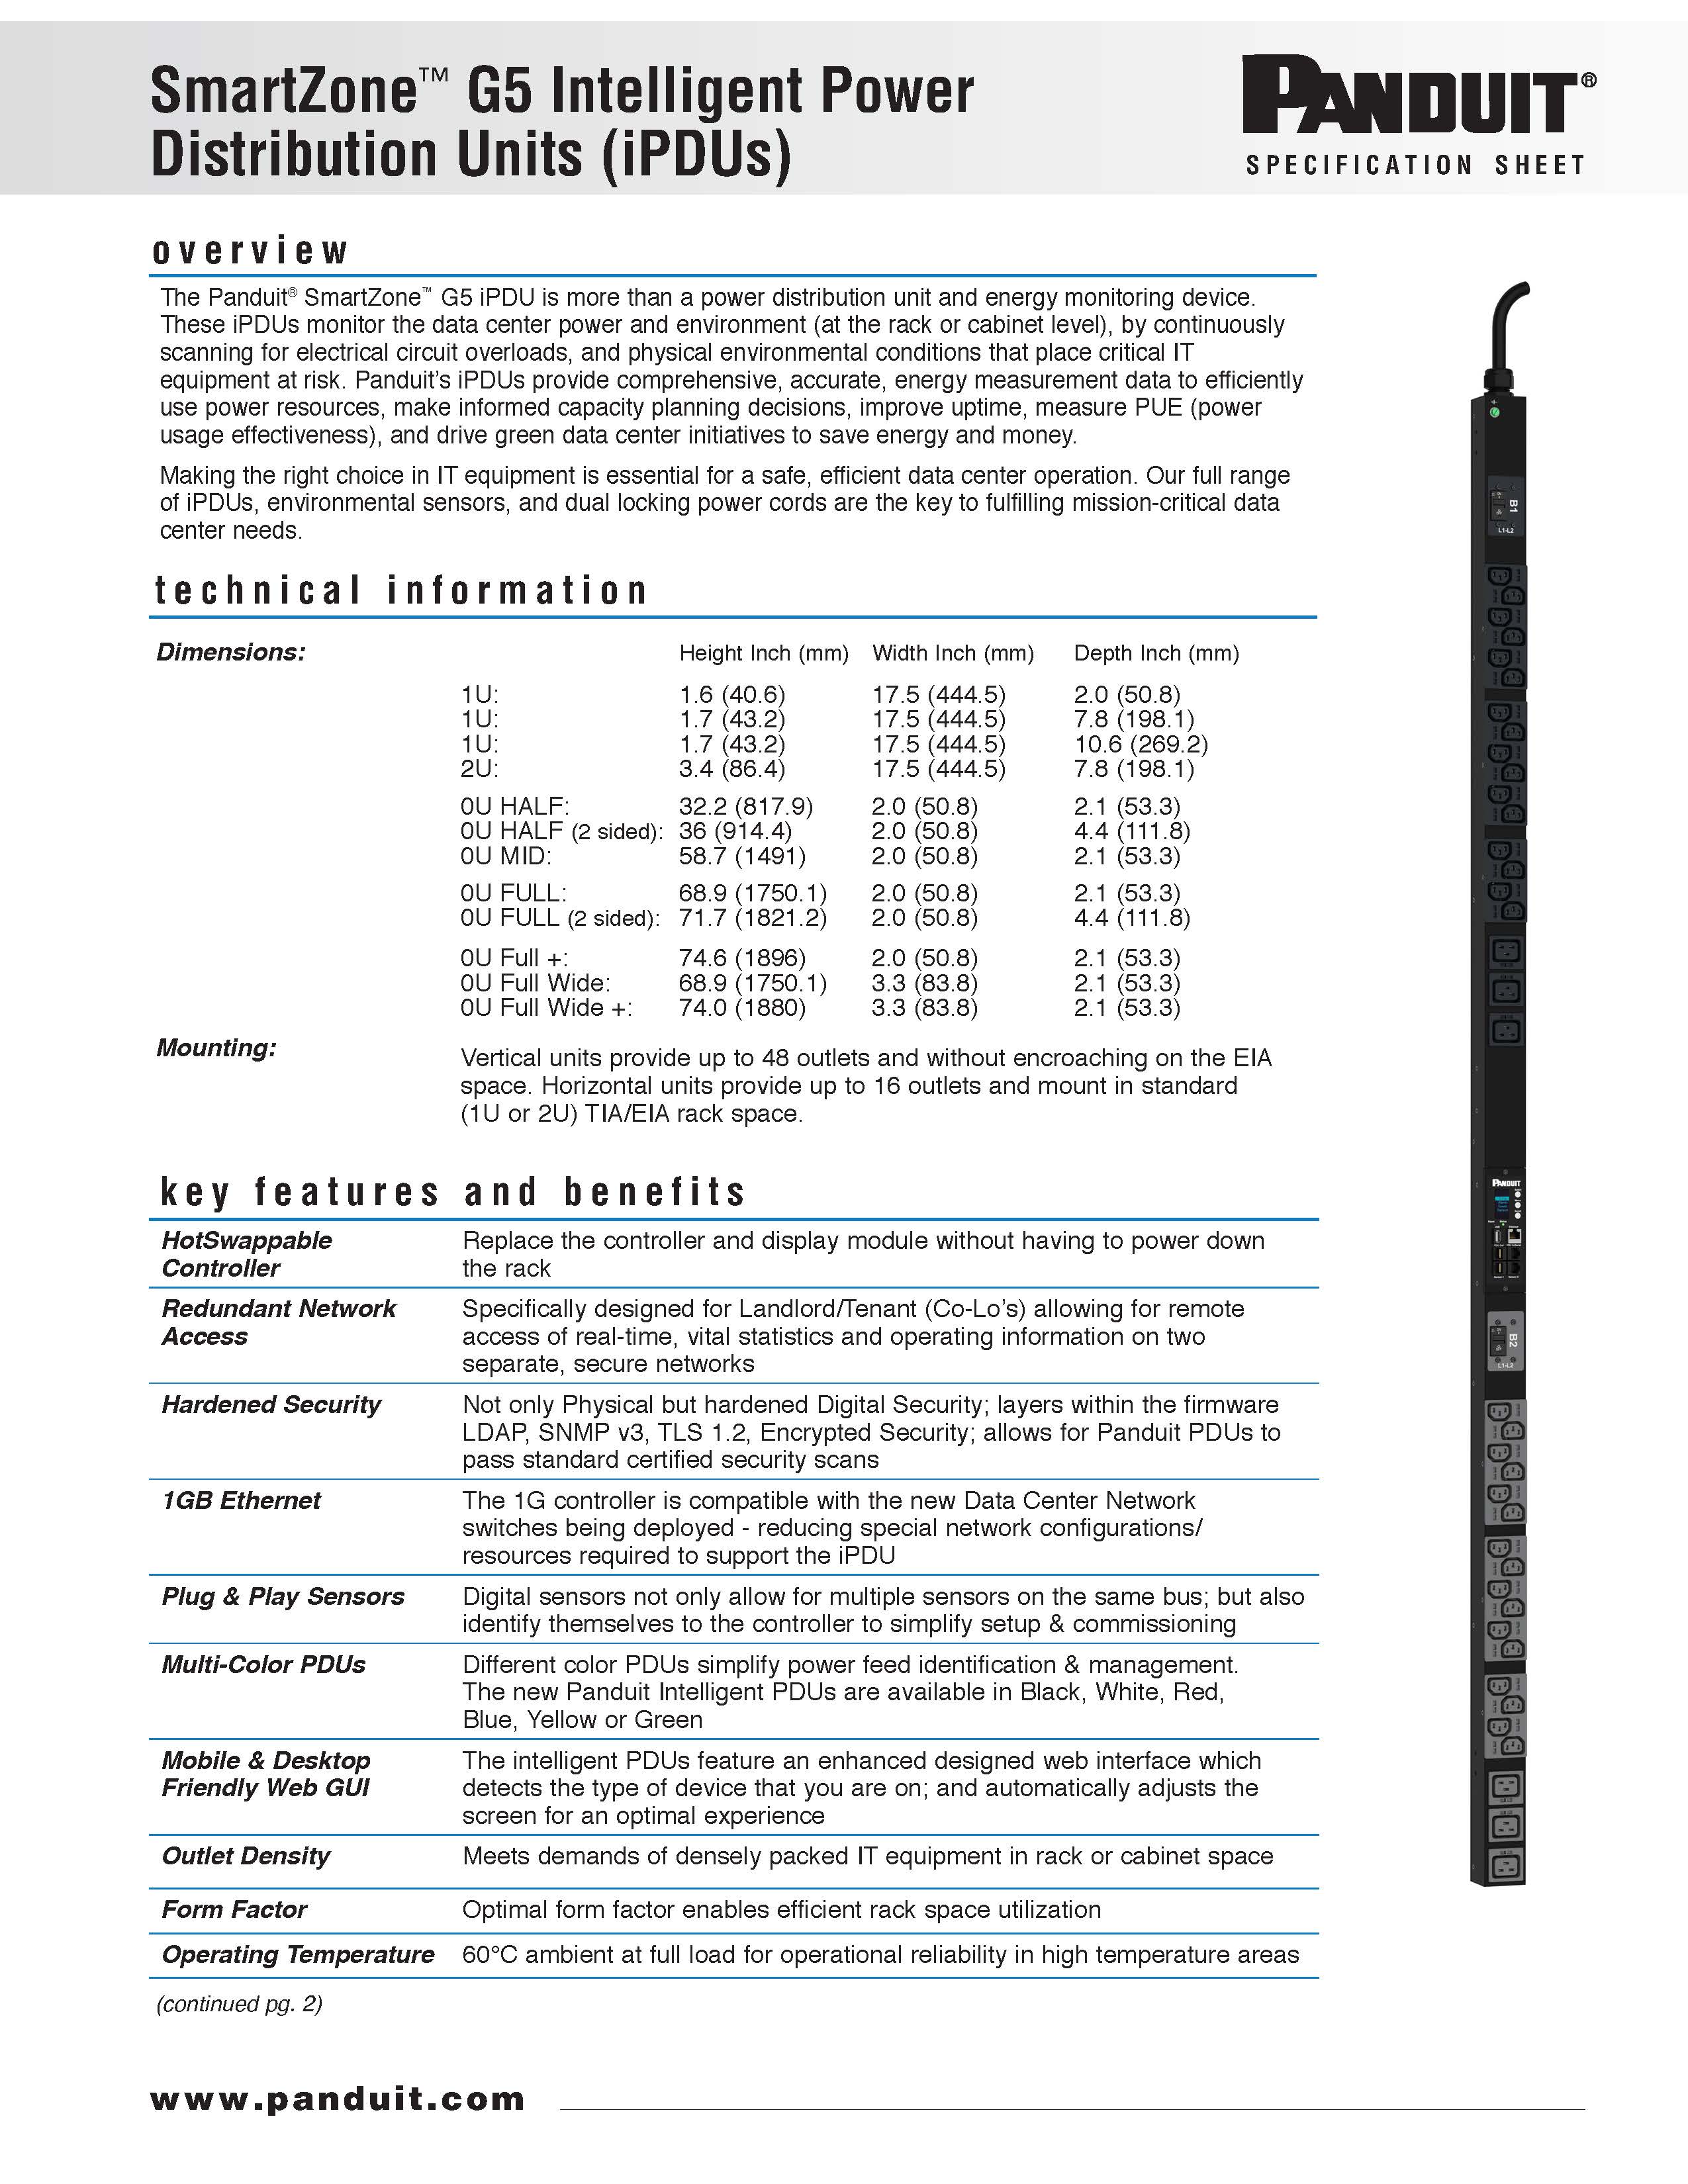 SmartZone™ PDU Spec Sheet